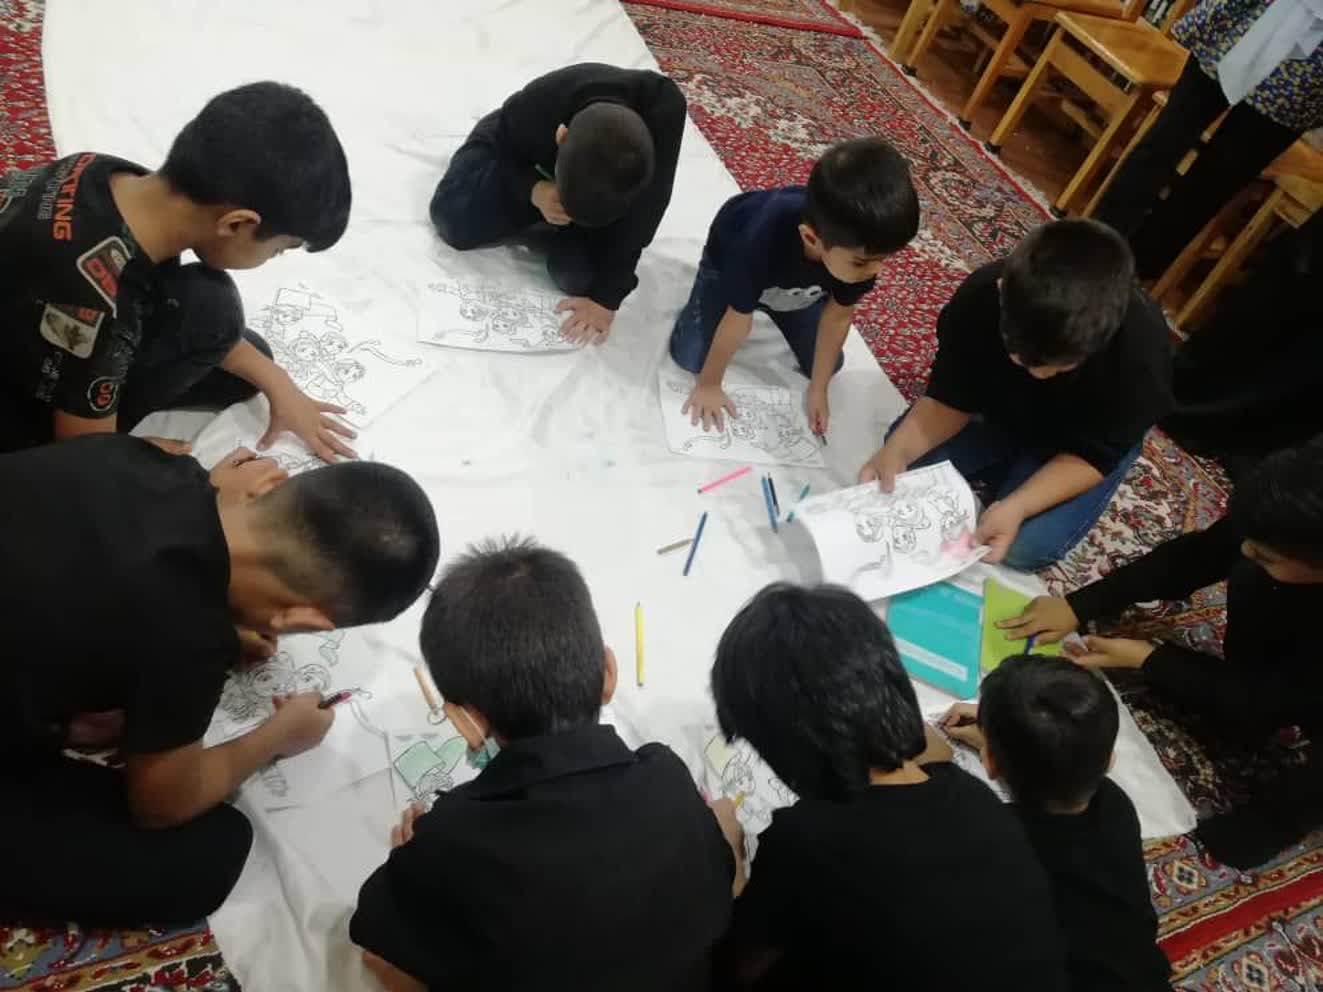 مهد محرم بچه مسجدی ها میزبان کودکان حسینی